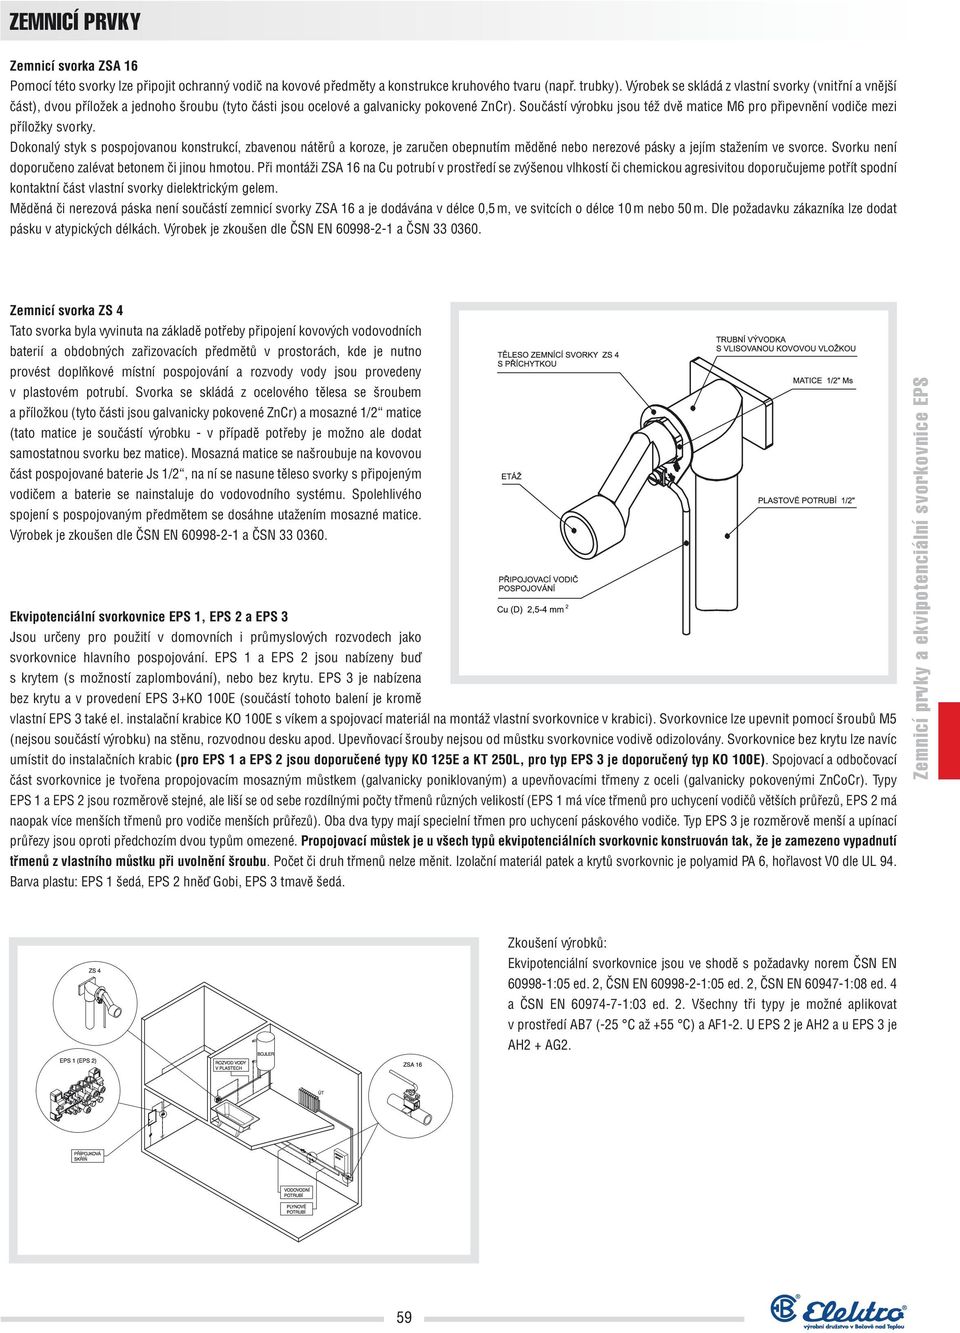 ZEMNICÍ PRVKY. Zemnicí prvky a ekvipotenciální svorkovnice EPS - PDF  Stažení zdarma